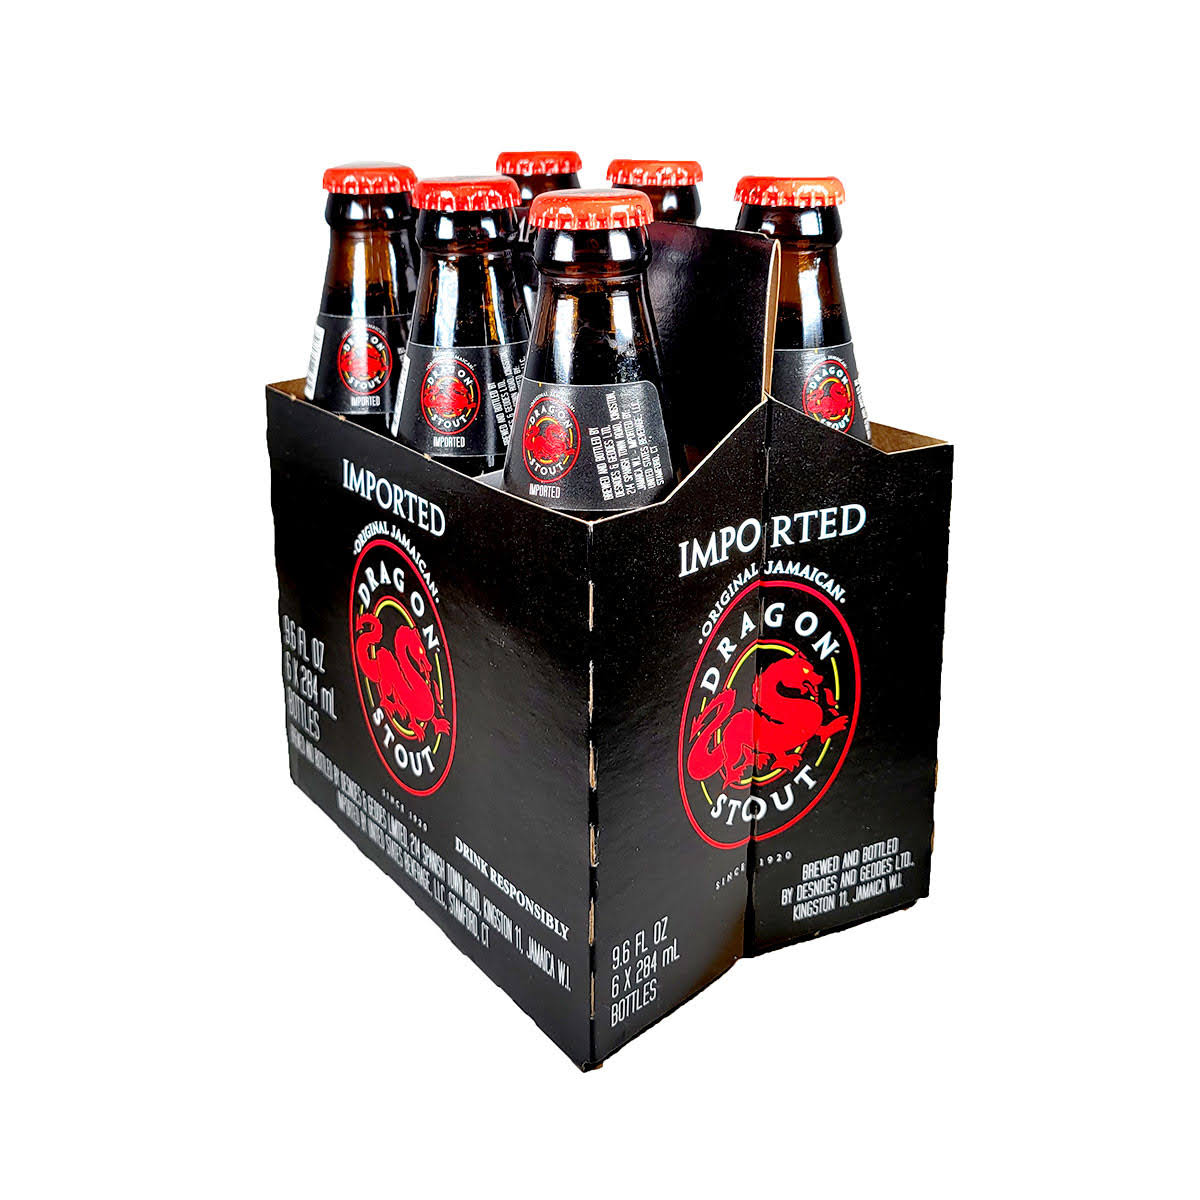 Dragon Stout Beer - 6 pack, 284 ml bottles